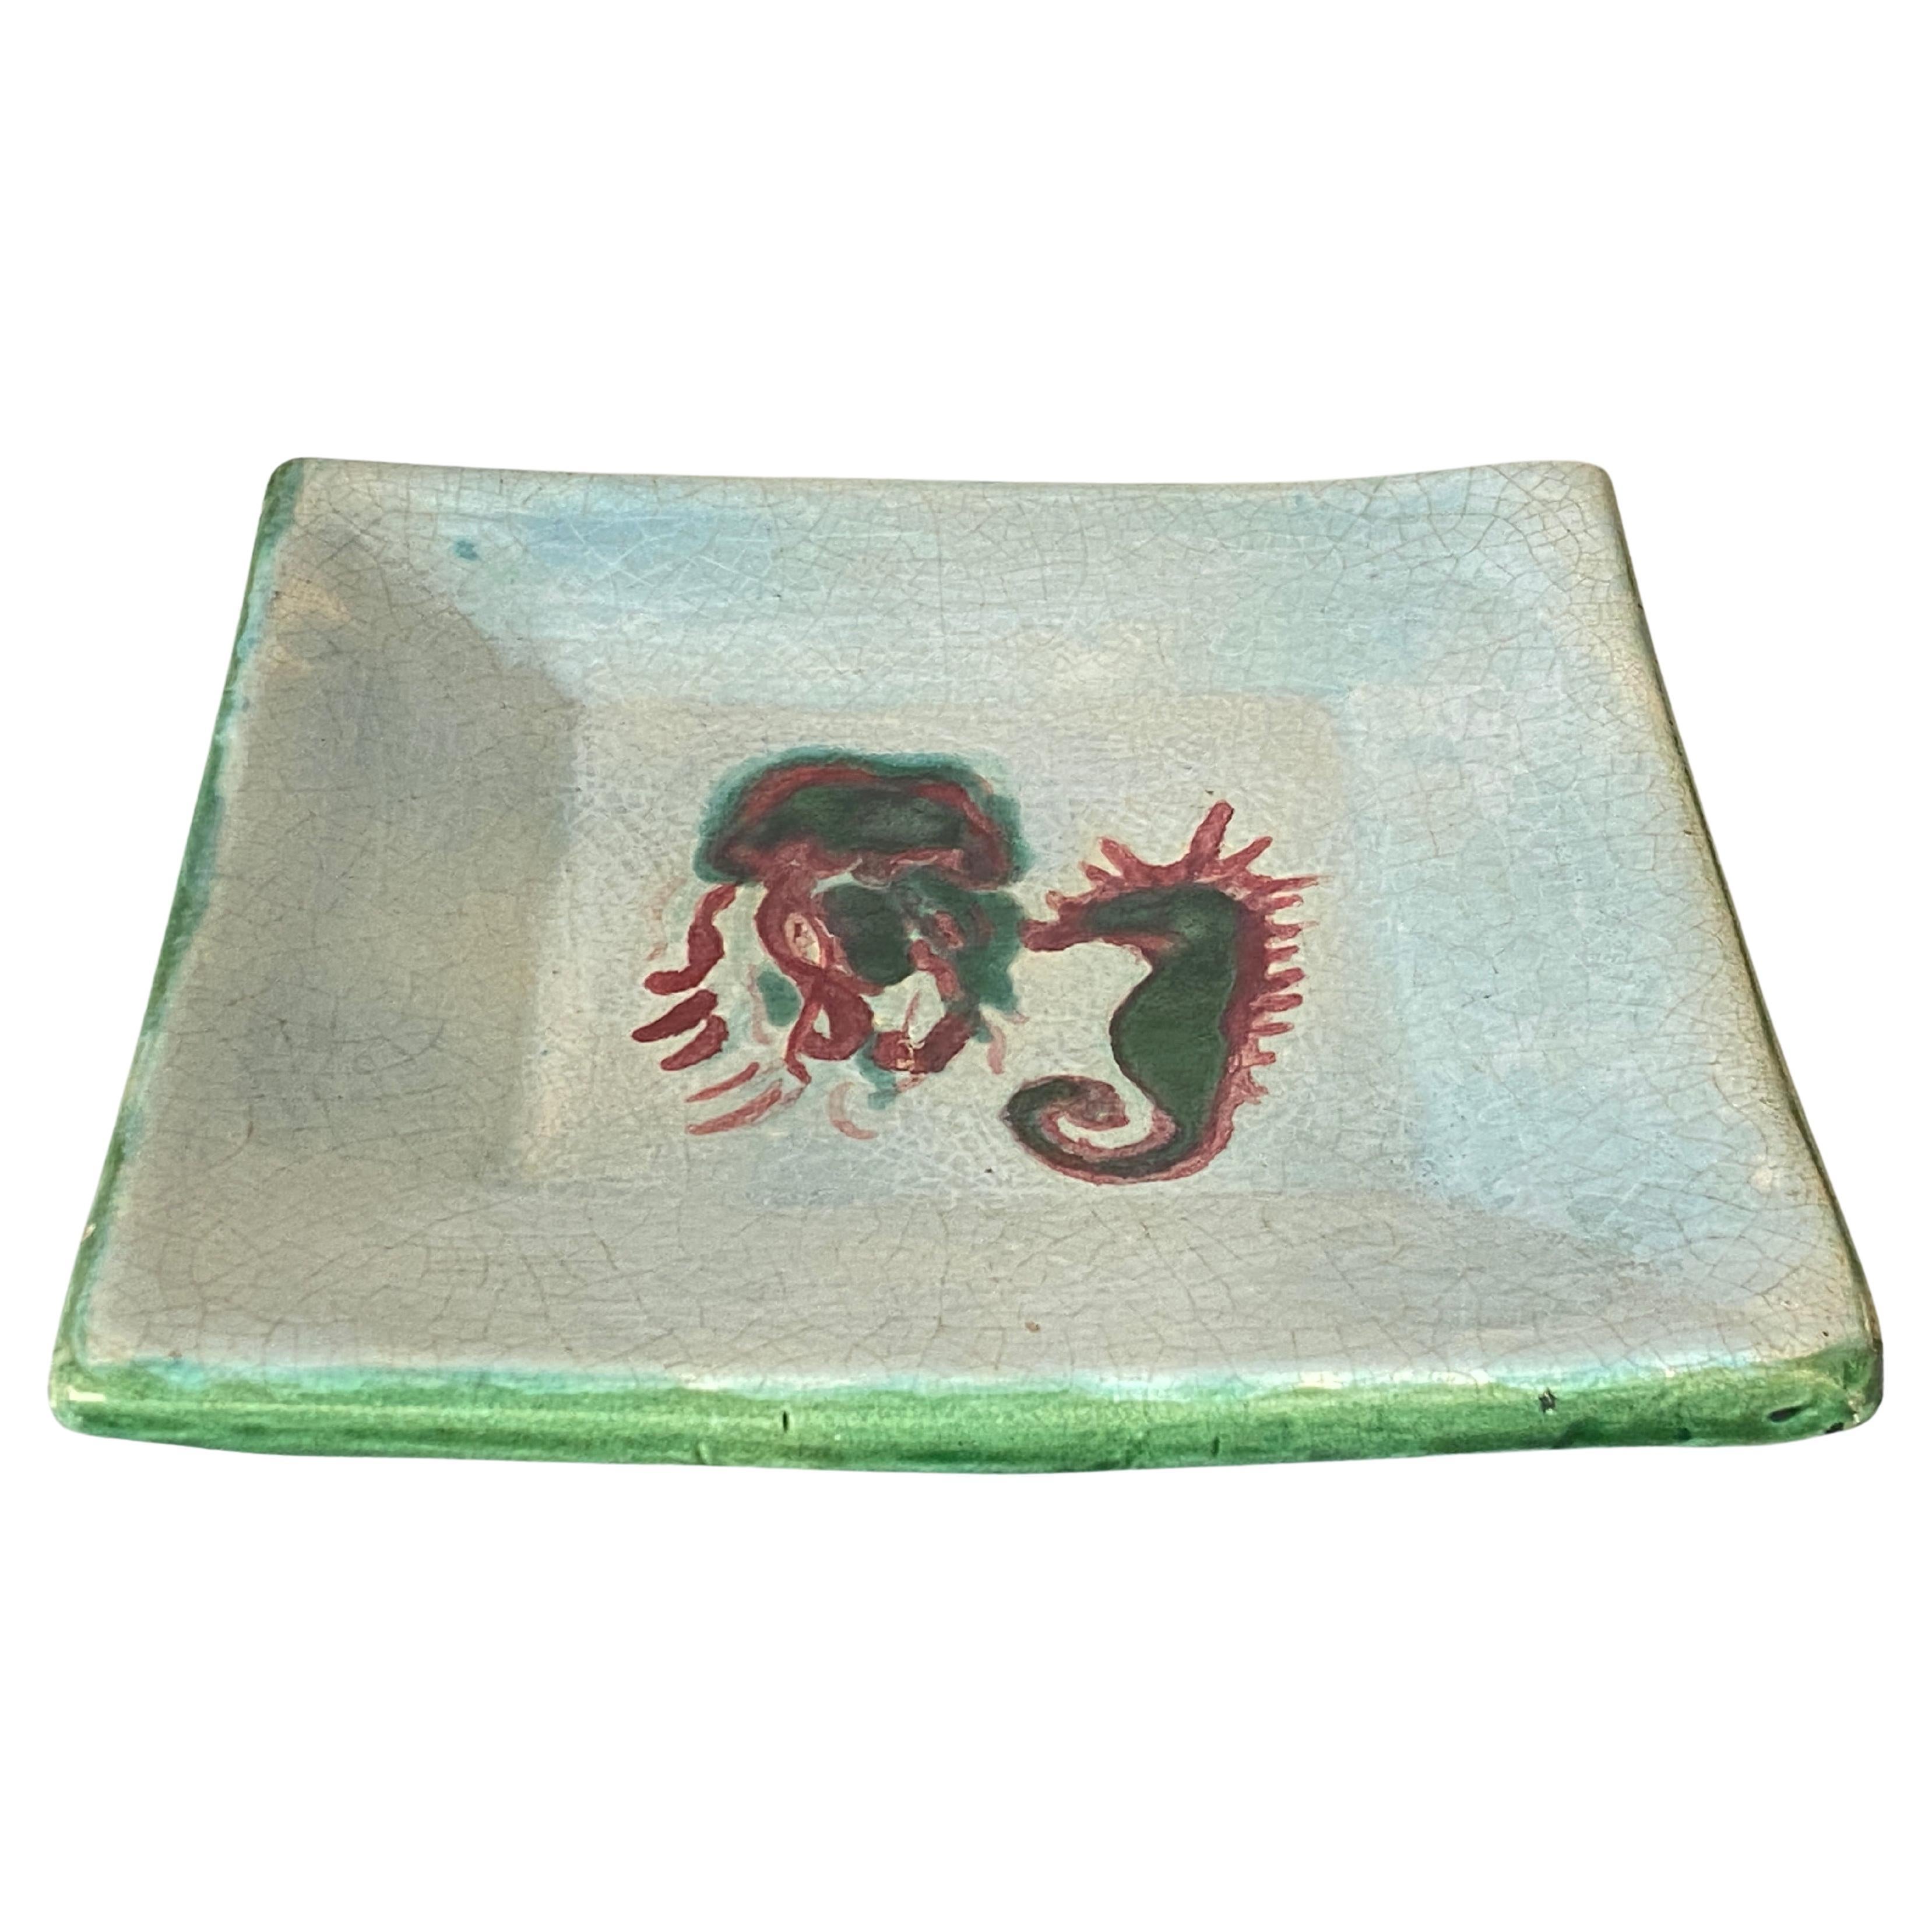 Vide-Poche en céramique, plat décoratif représentant un cheval de mer  blanc et vert